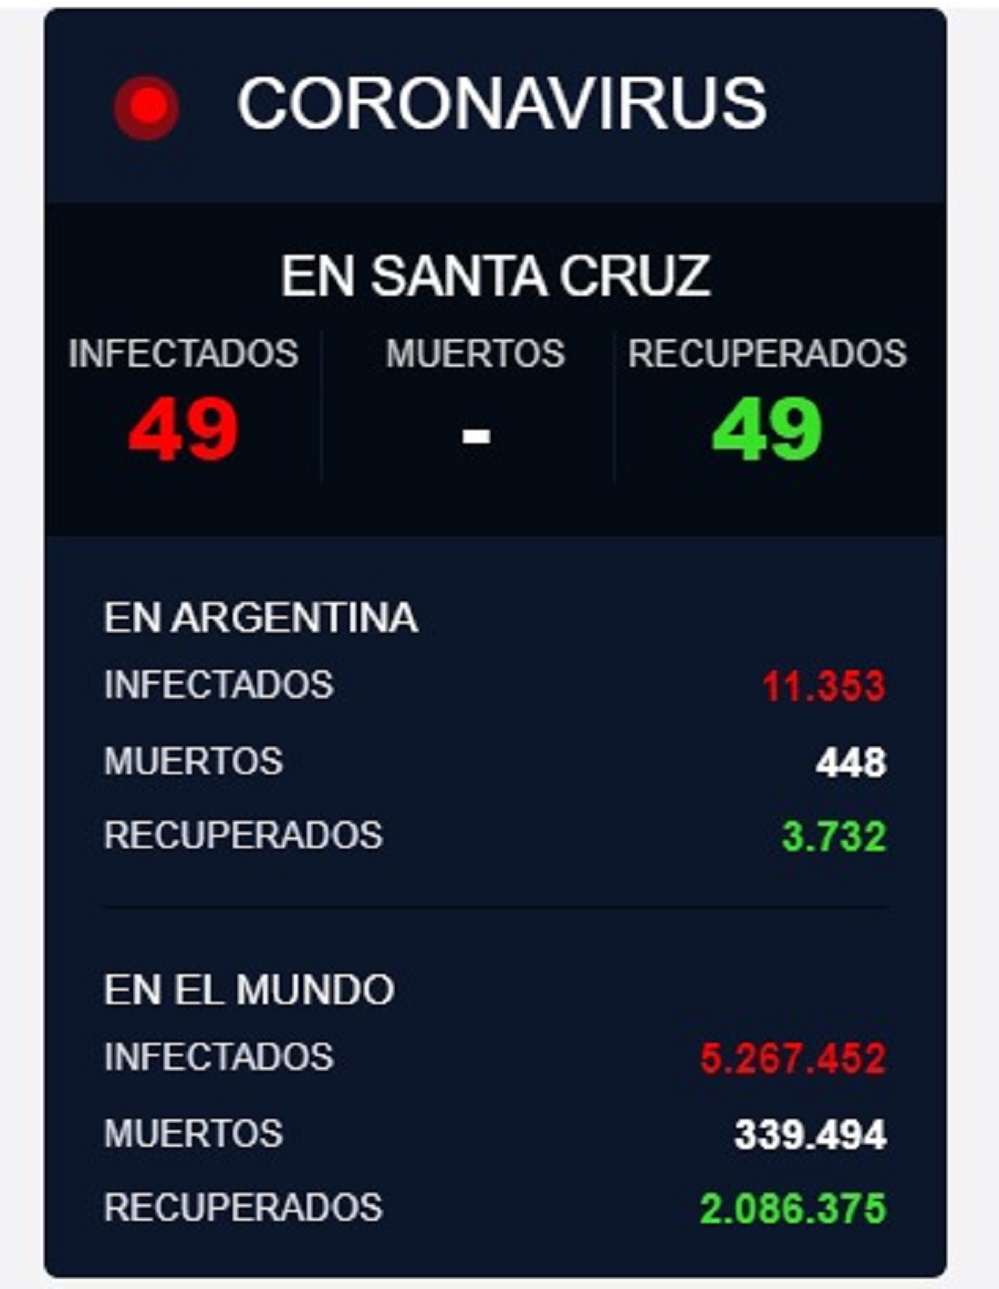 49 personas contagiadas de Covid19, se registran en la ciudad de Río Gallegos, Santa Cruz, Argentina